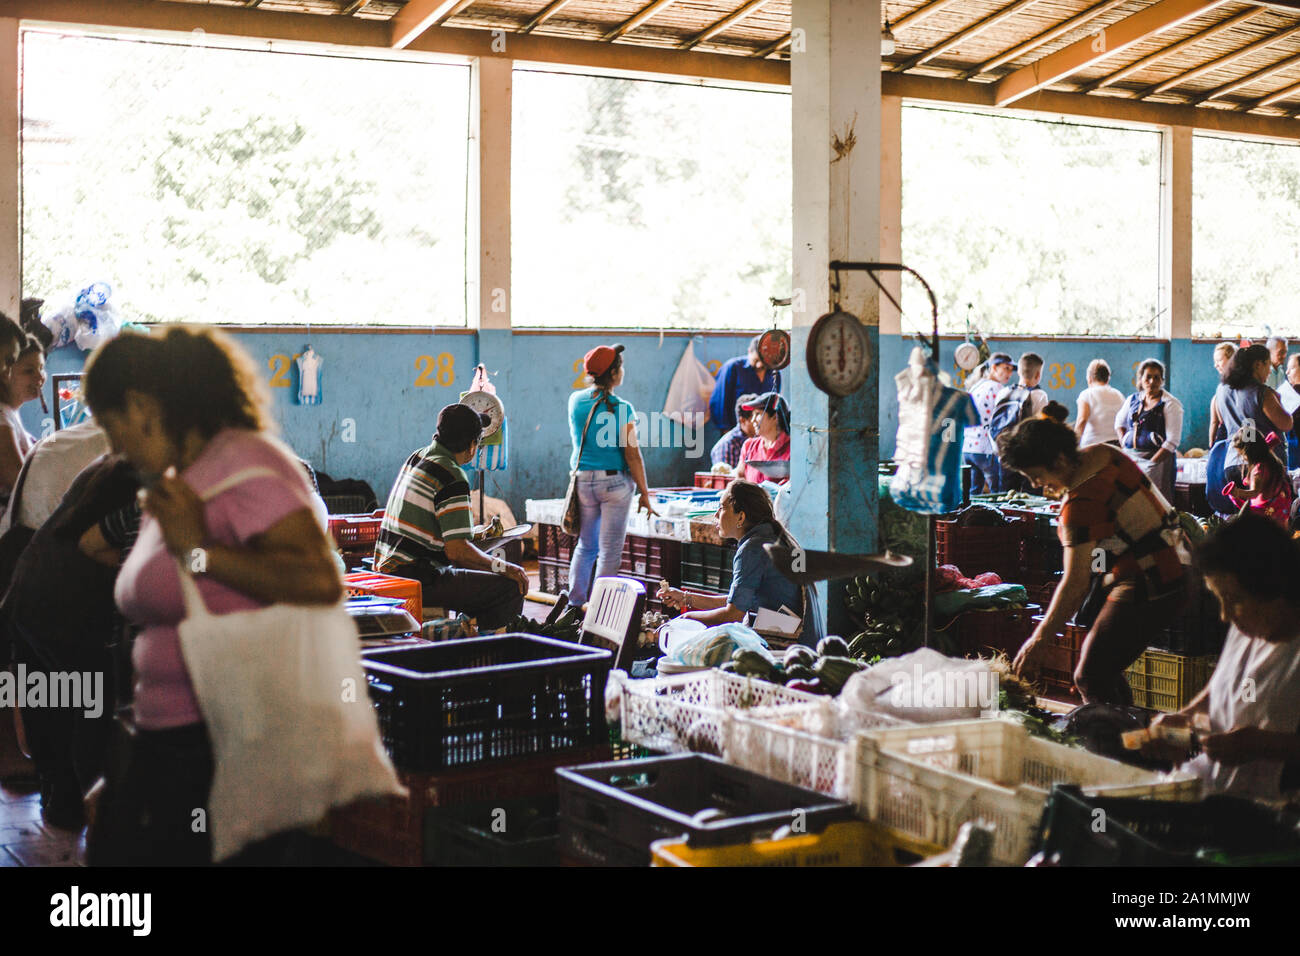 Scène typique dans un marché de fruits et légumes en Colombie, où les agriculteurs viennent à la ville de San Gil, Santander pour vendre leurs produits biologiques Banque D'Images